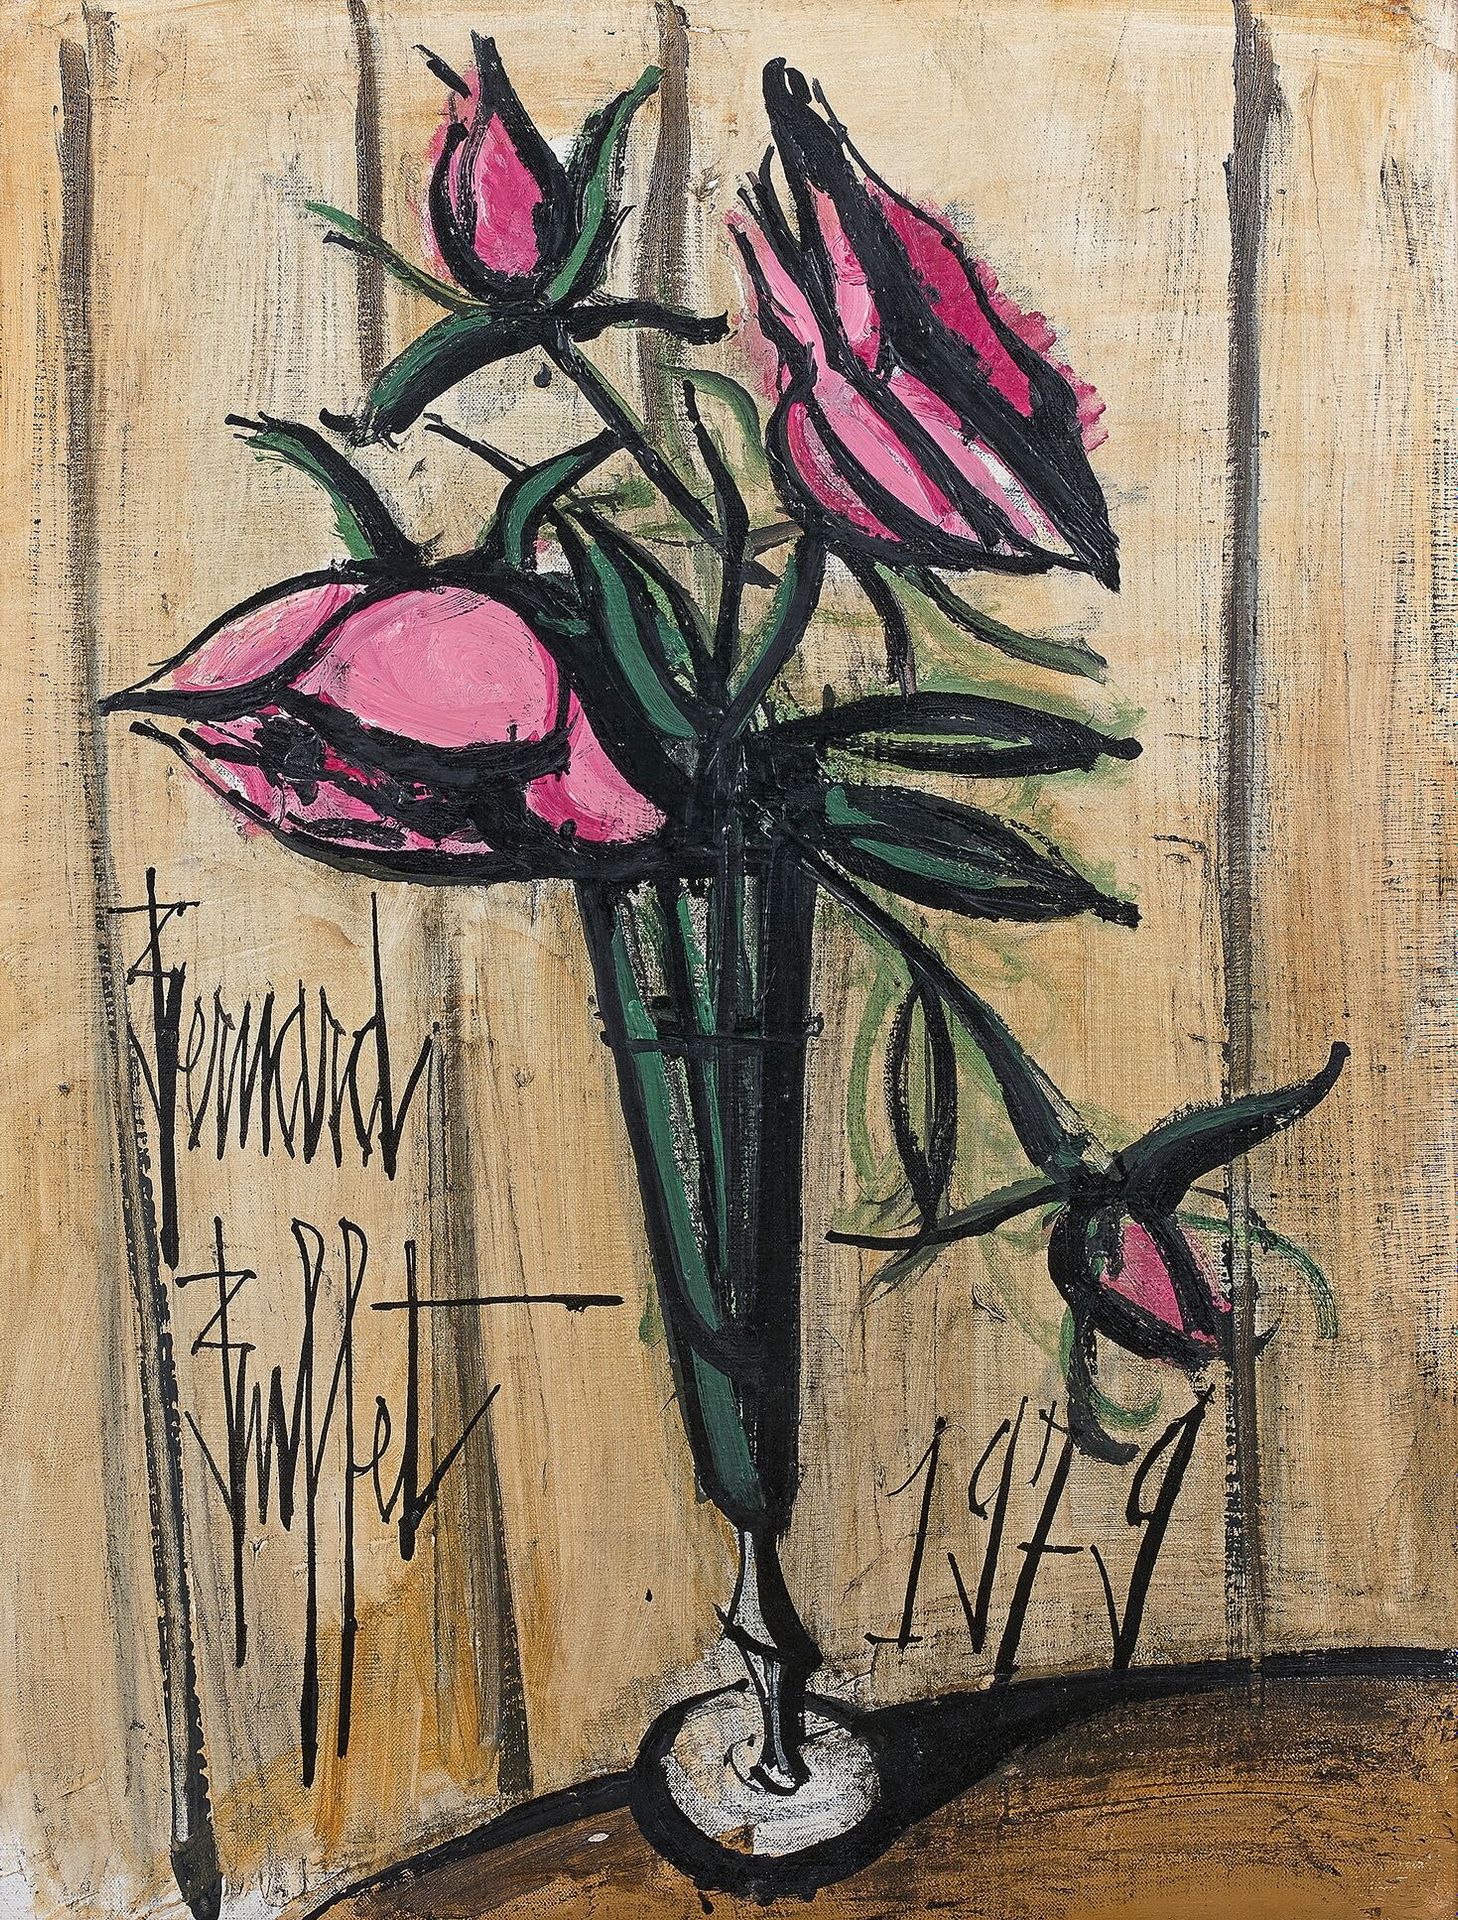 Null 伯纳德-布菲特(1928-1999)

粉红玫瑰，1979年

布面油画，左下角有签名，中下角有日期

65 x 50厘米

出处 :

- 巴黎，M&hellip;